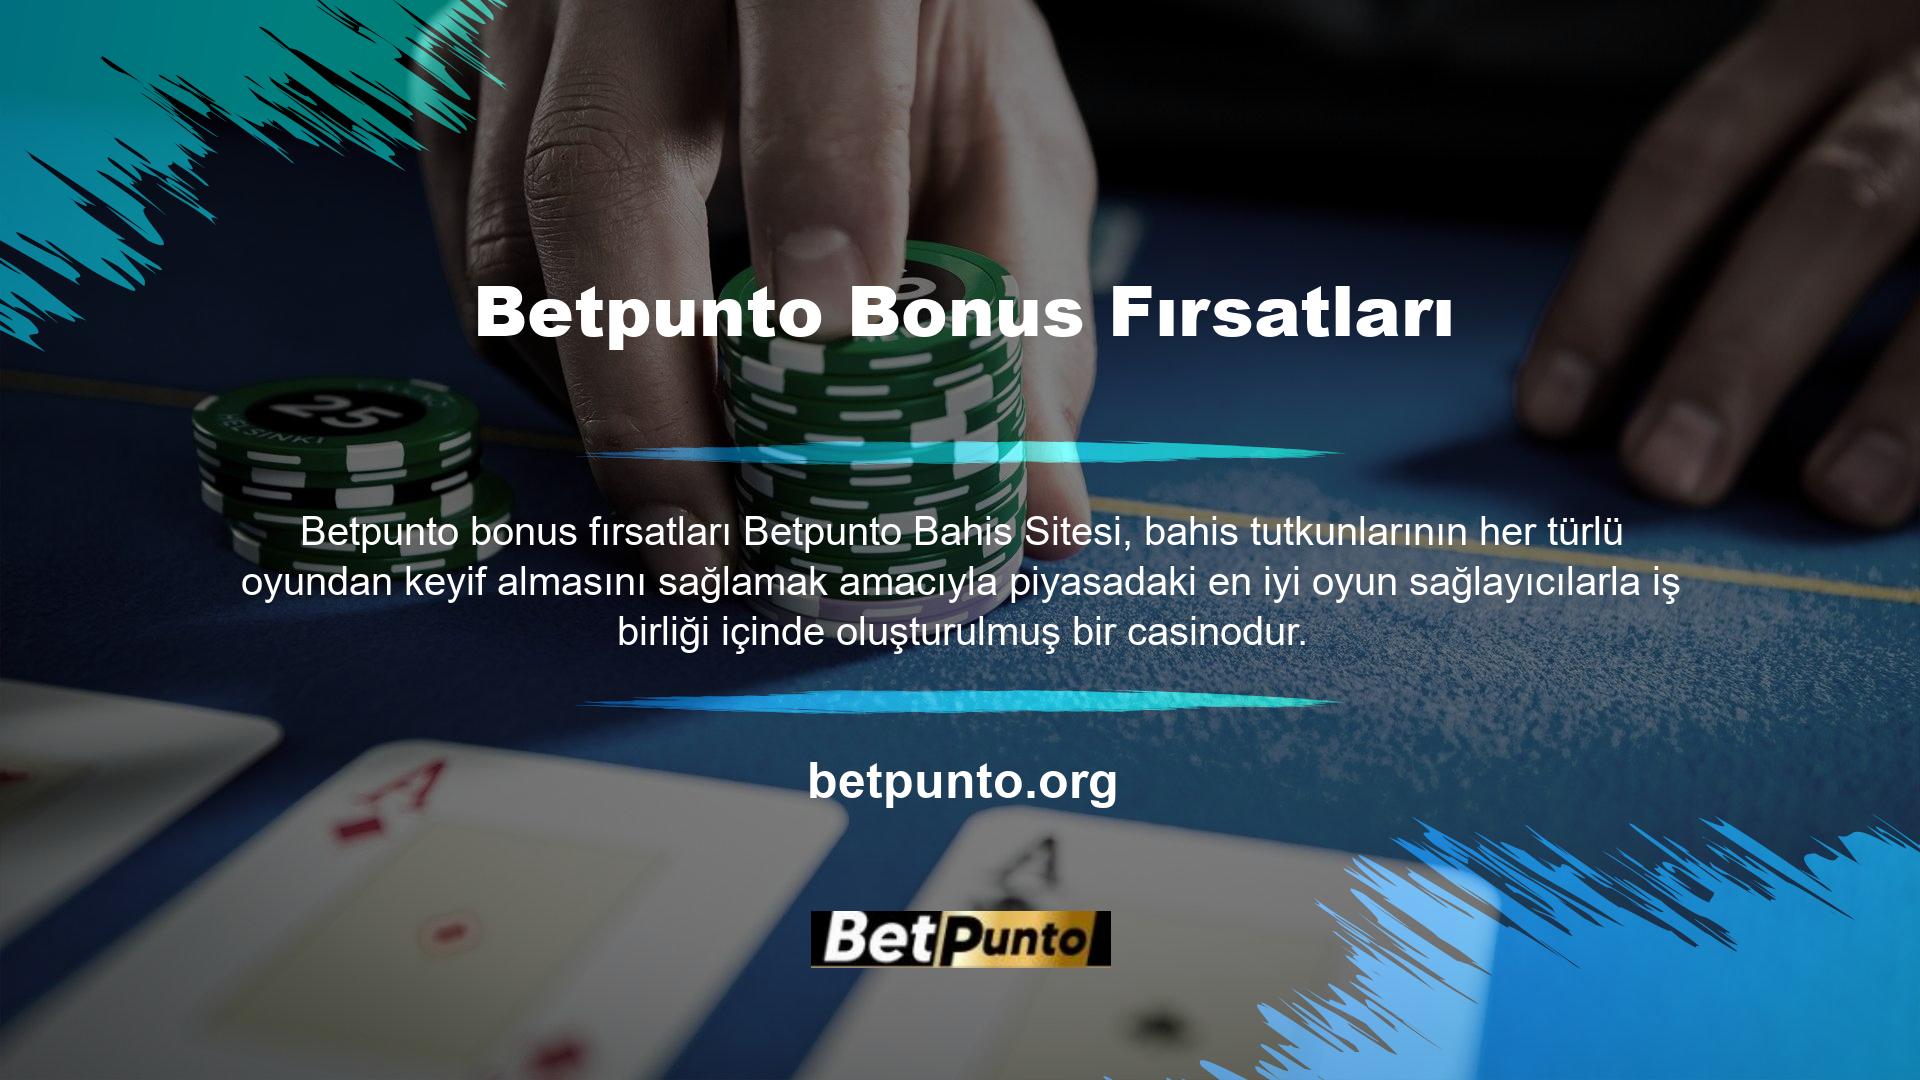 Betpunto canlı bahis ve casino oyun sitesinin hedeflerinden biri de bahis tutkunlarının ilk tercihi olmaktır